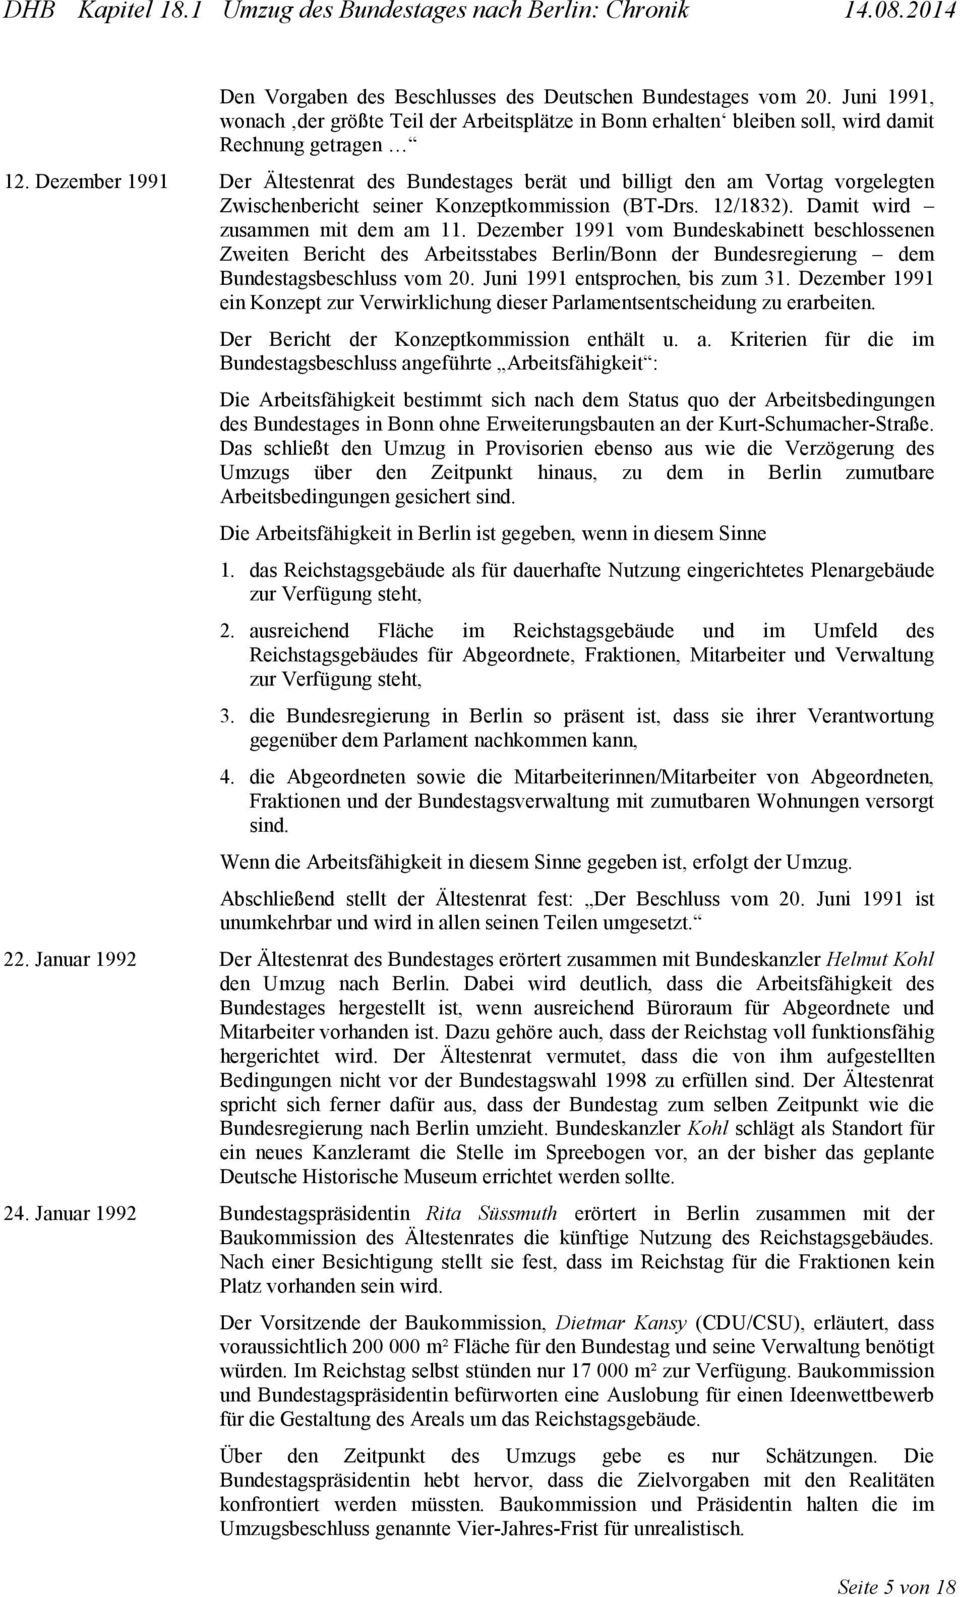 Dezember 1991 vom Bundeskabinett beschlossenen Zweiten Bericht des Arbeitsstabes Berlin/Bonn der Bundesregierung dem Bundestagsbeschluss vom 20. Juni 1991 entsprochen, bis zum 31.